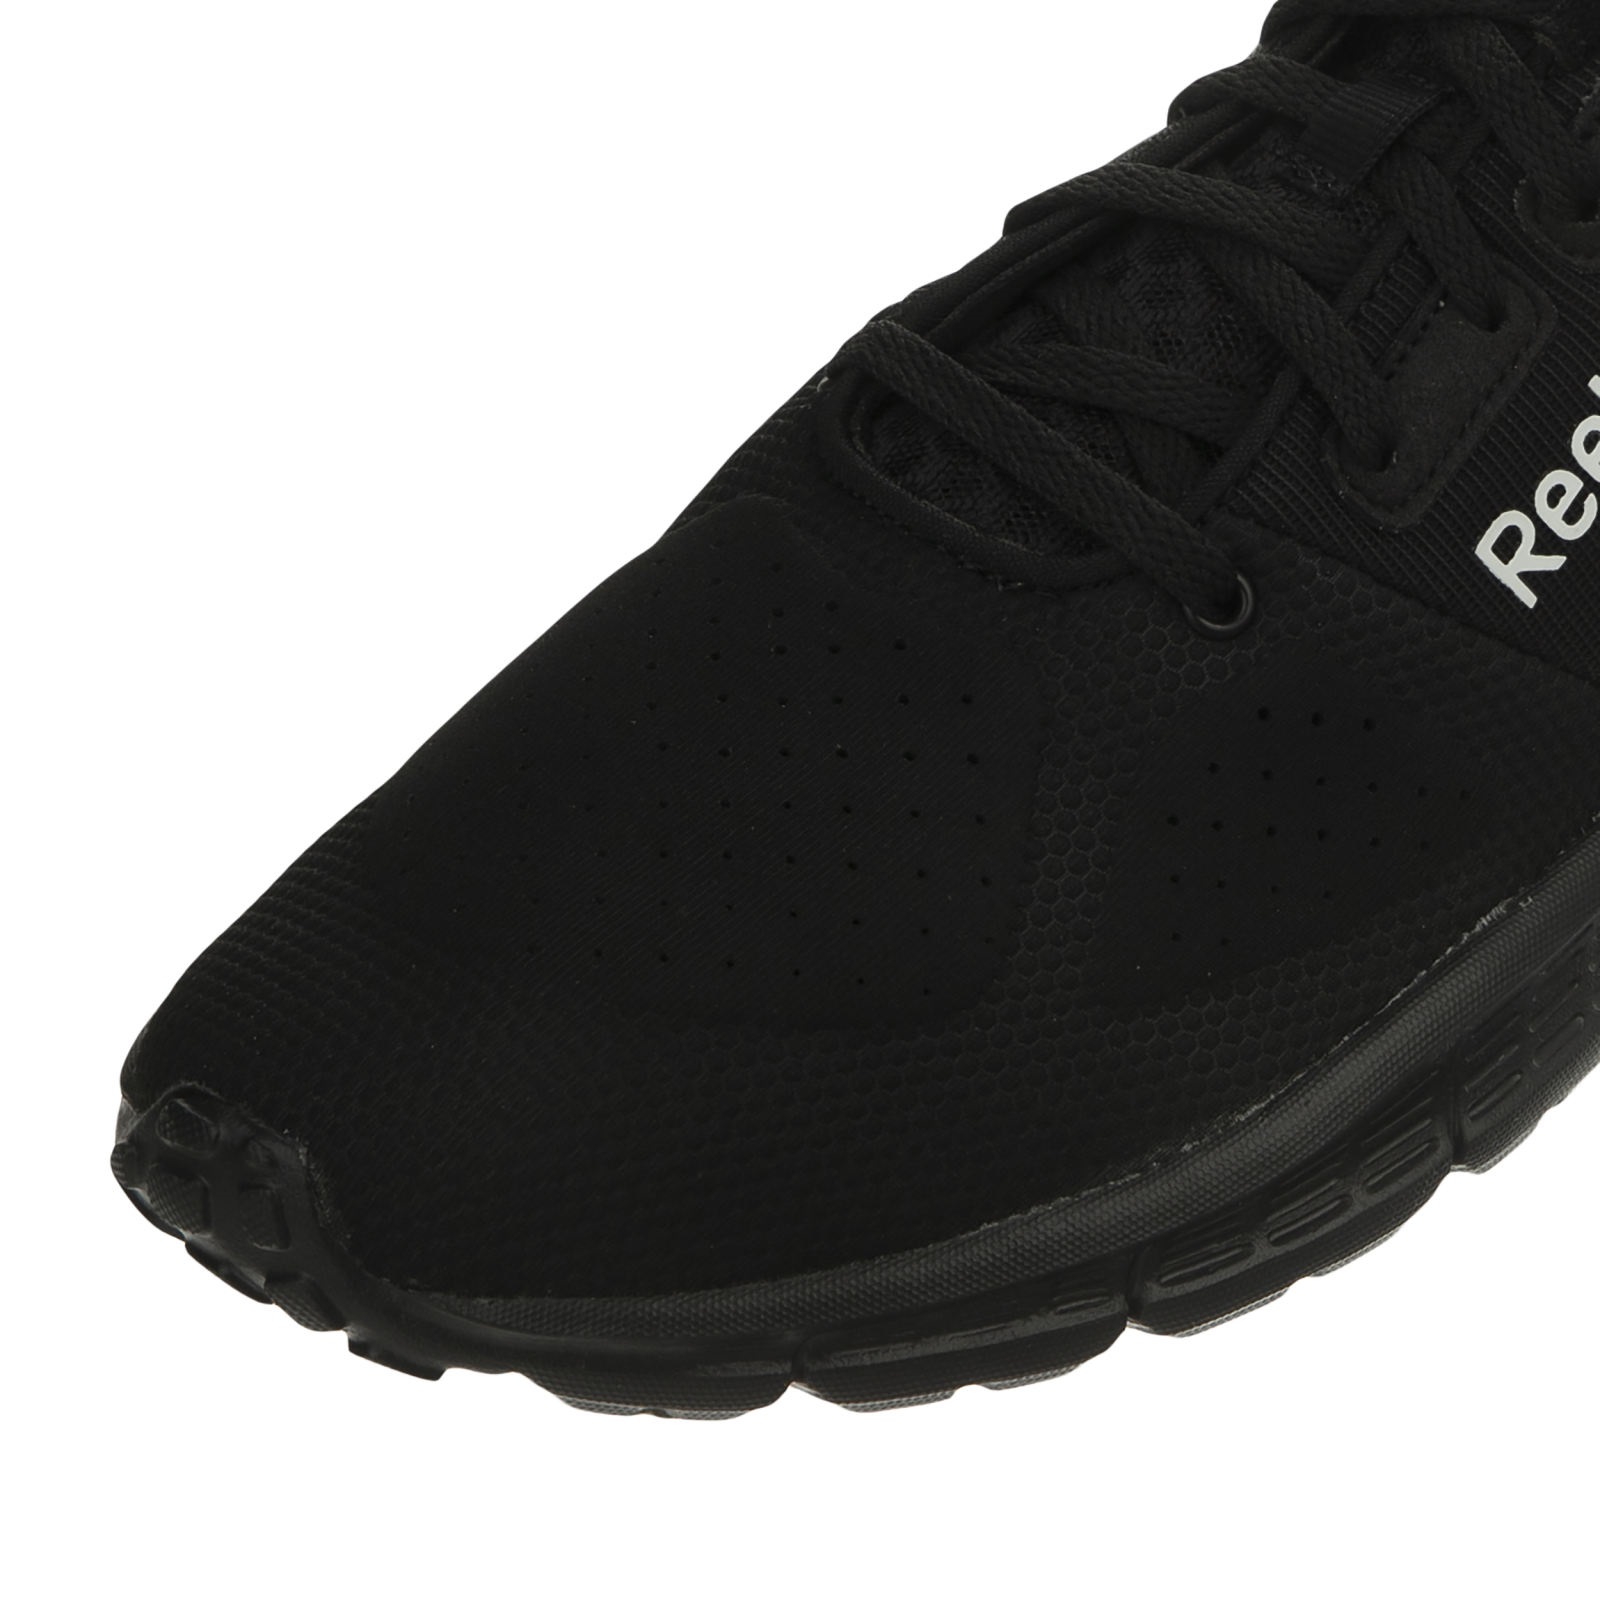 کفش مخصوص پیاده روی مردانه ریباک مدل BS9577